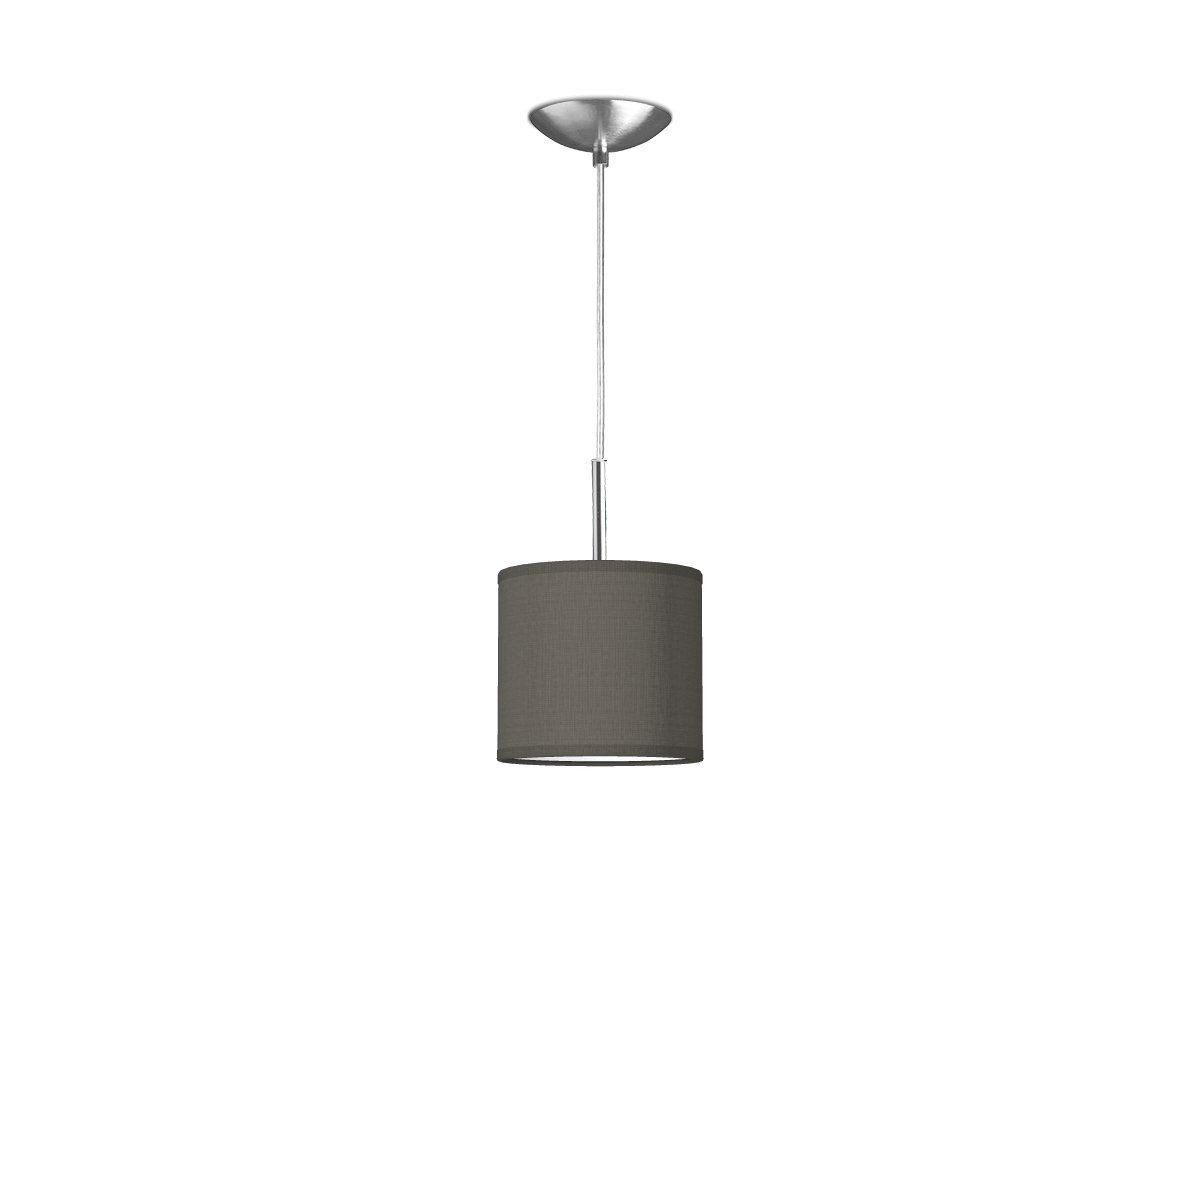 Light depot - hanglamp Basic deluxe met lampenkap Bling 16 cm - antraciet - Outlet